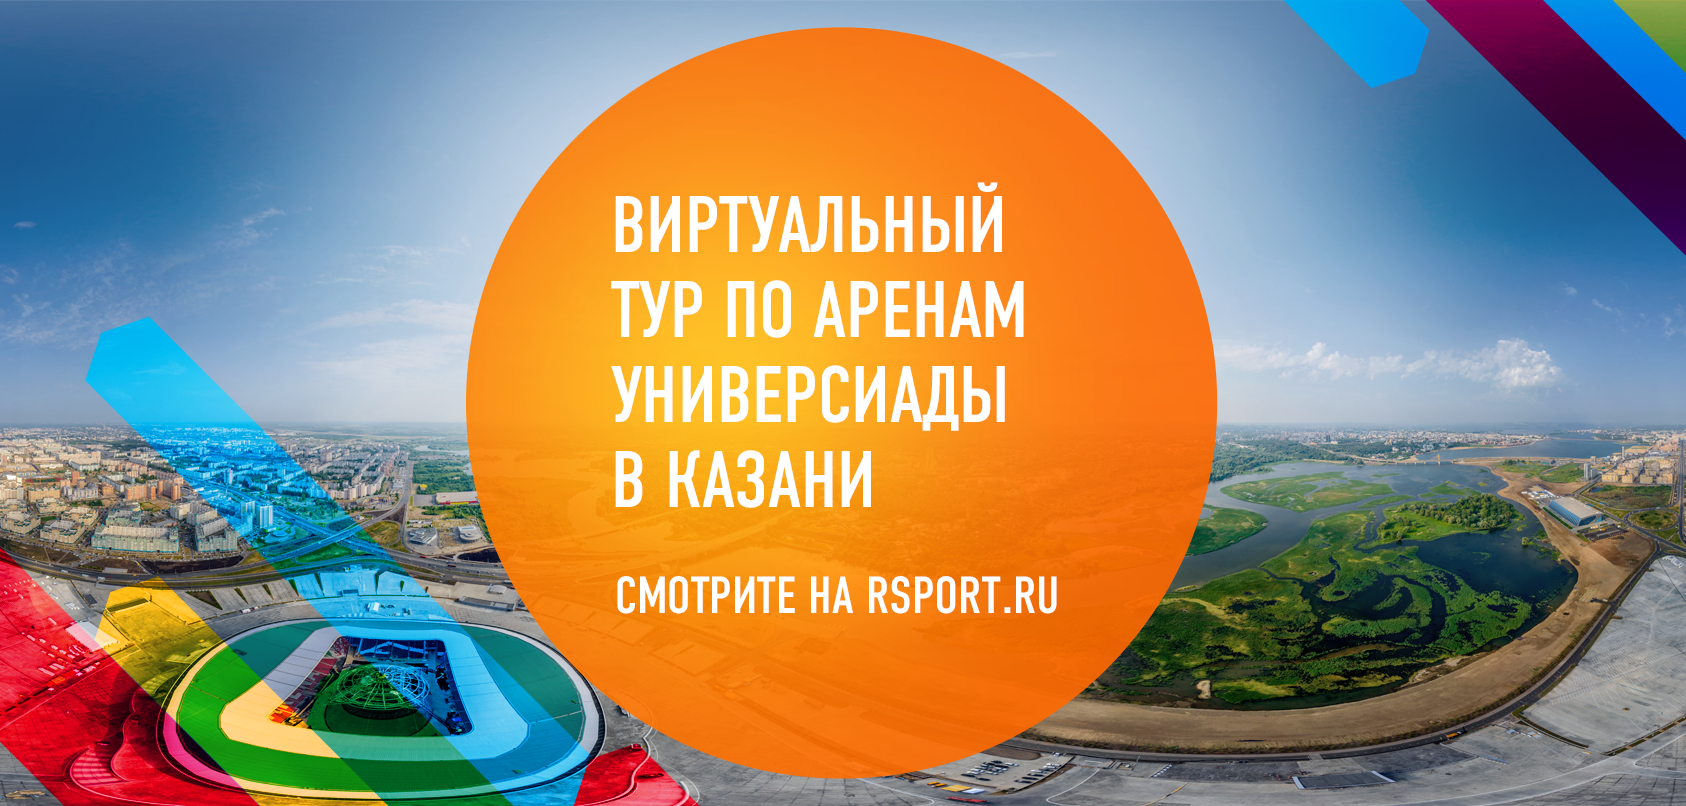 Виртуальный тур по аренам Универсиады в Казани